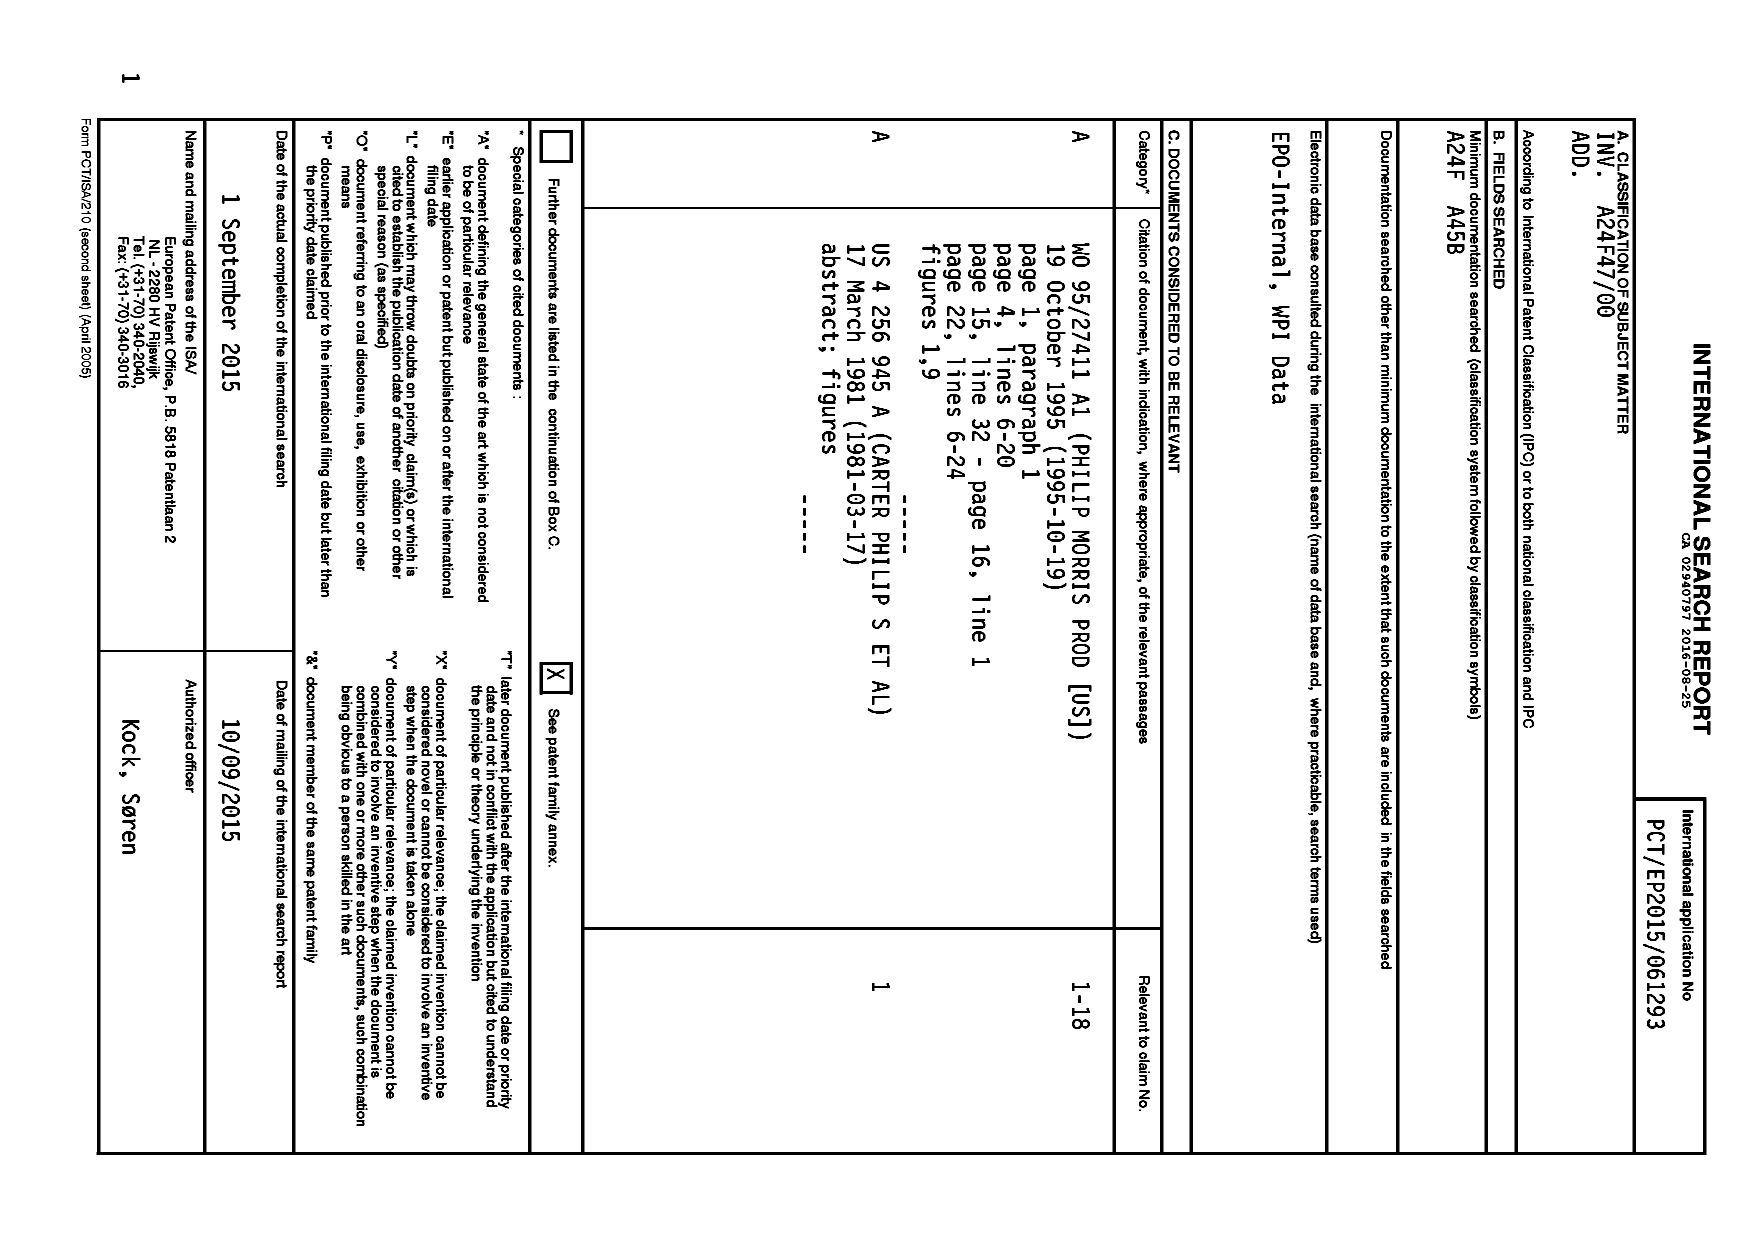 Document de brevet canadien 2940797. Rapport de recherche internationale 20151225. Image 1 de 2